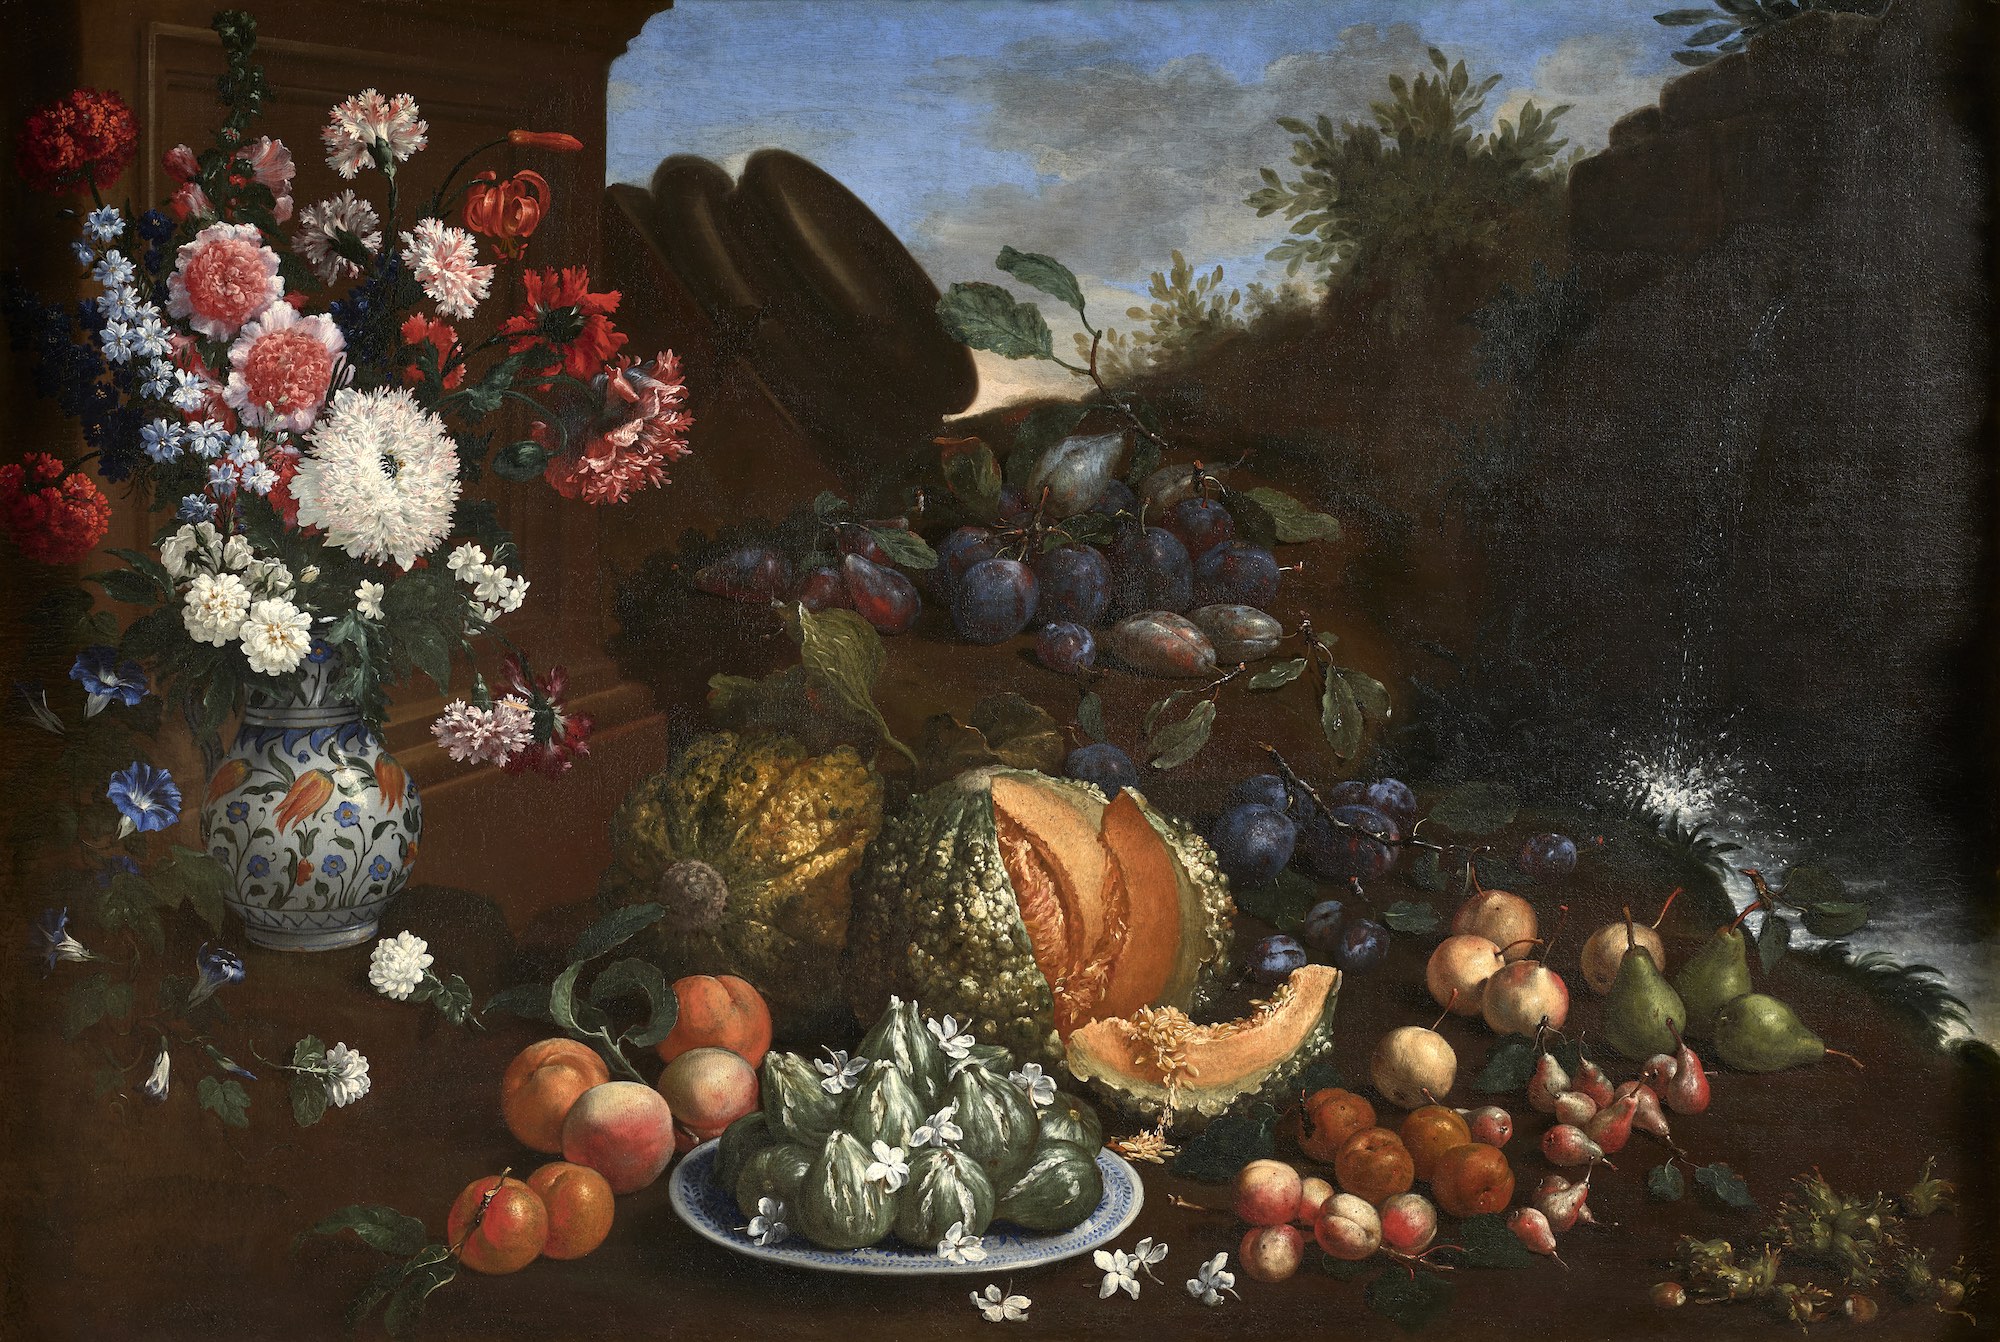 Bartolomeo Bimbi (1648-1729), Vase de fleurs, plat de figues, melons et prunes dans un paysage. Huile sur toile, 100 x 145,50 cm. Estimé : 200 000/300 000 €. Photo service de presse. © Artcurial